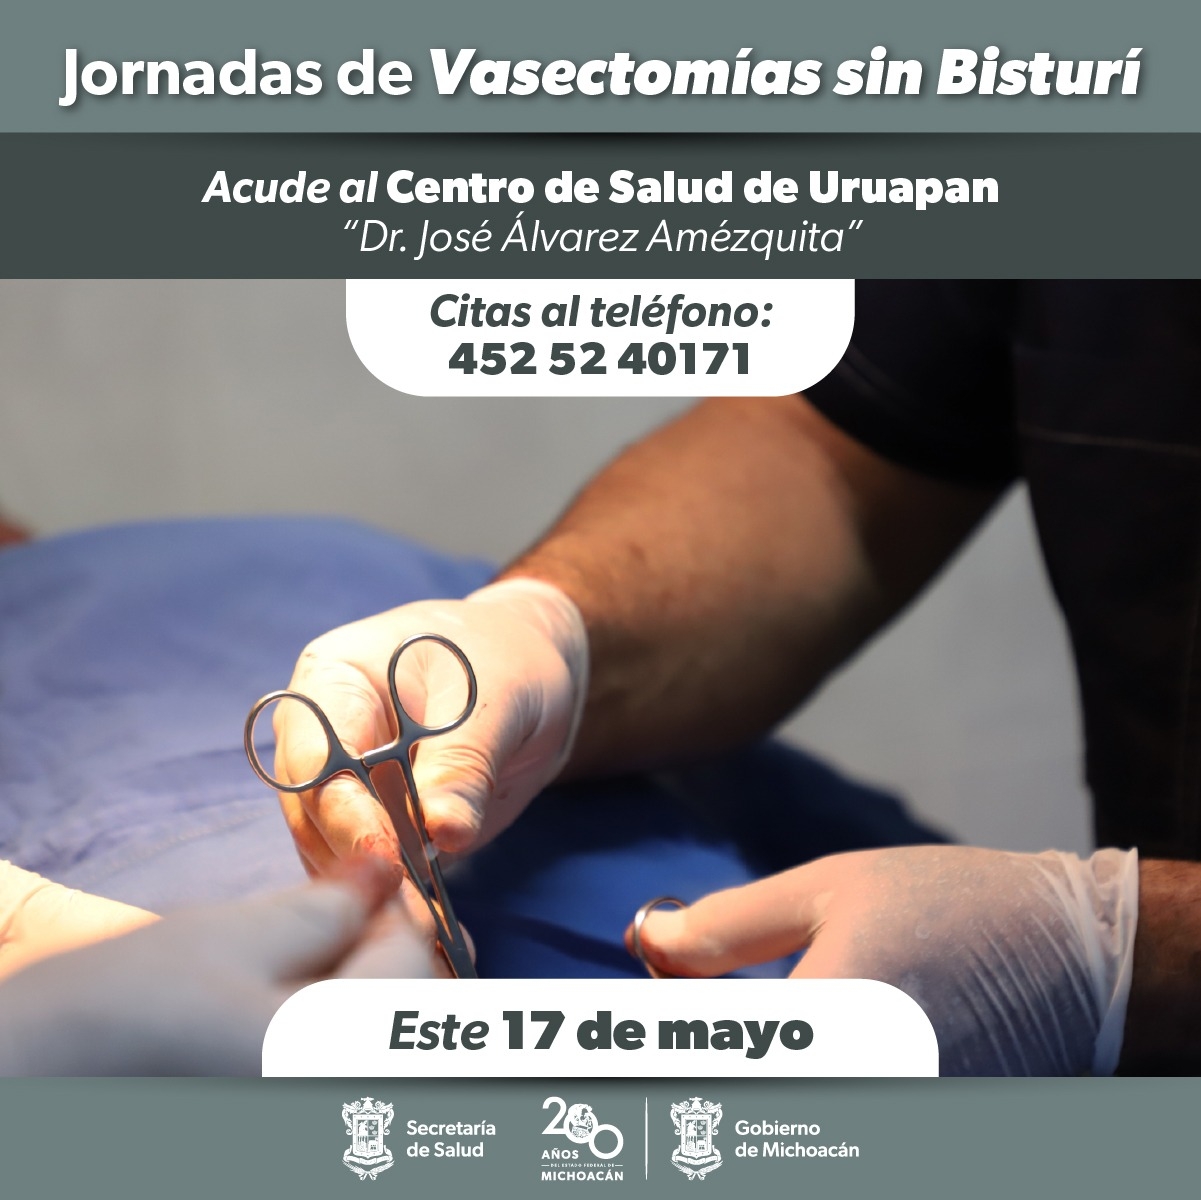 Segunda jornada de vasectomía sin bisturí gratuita en Uruapan